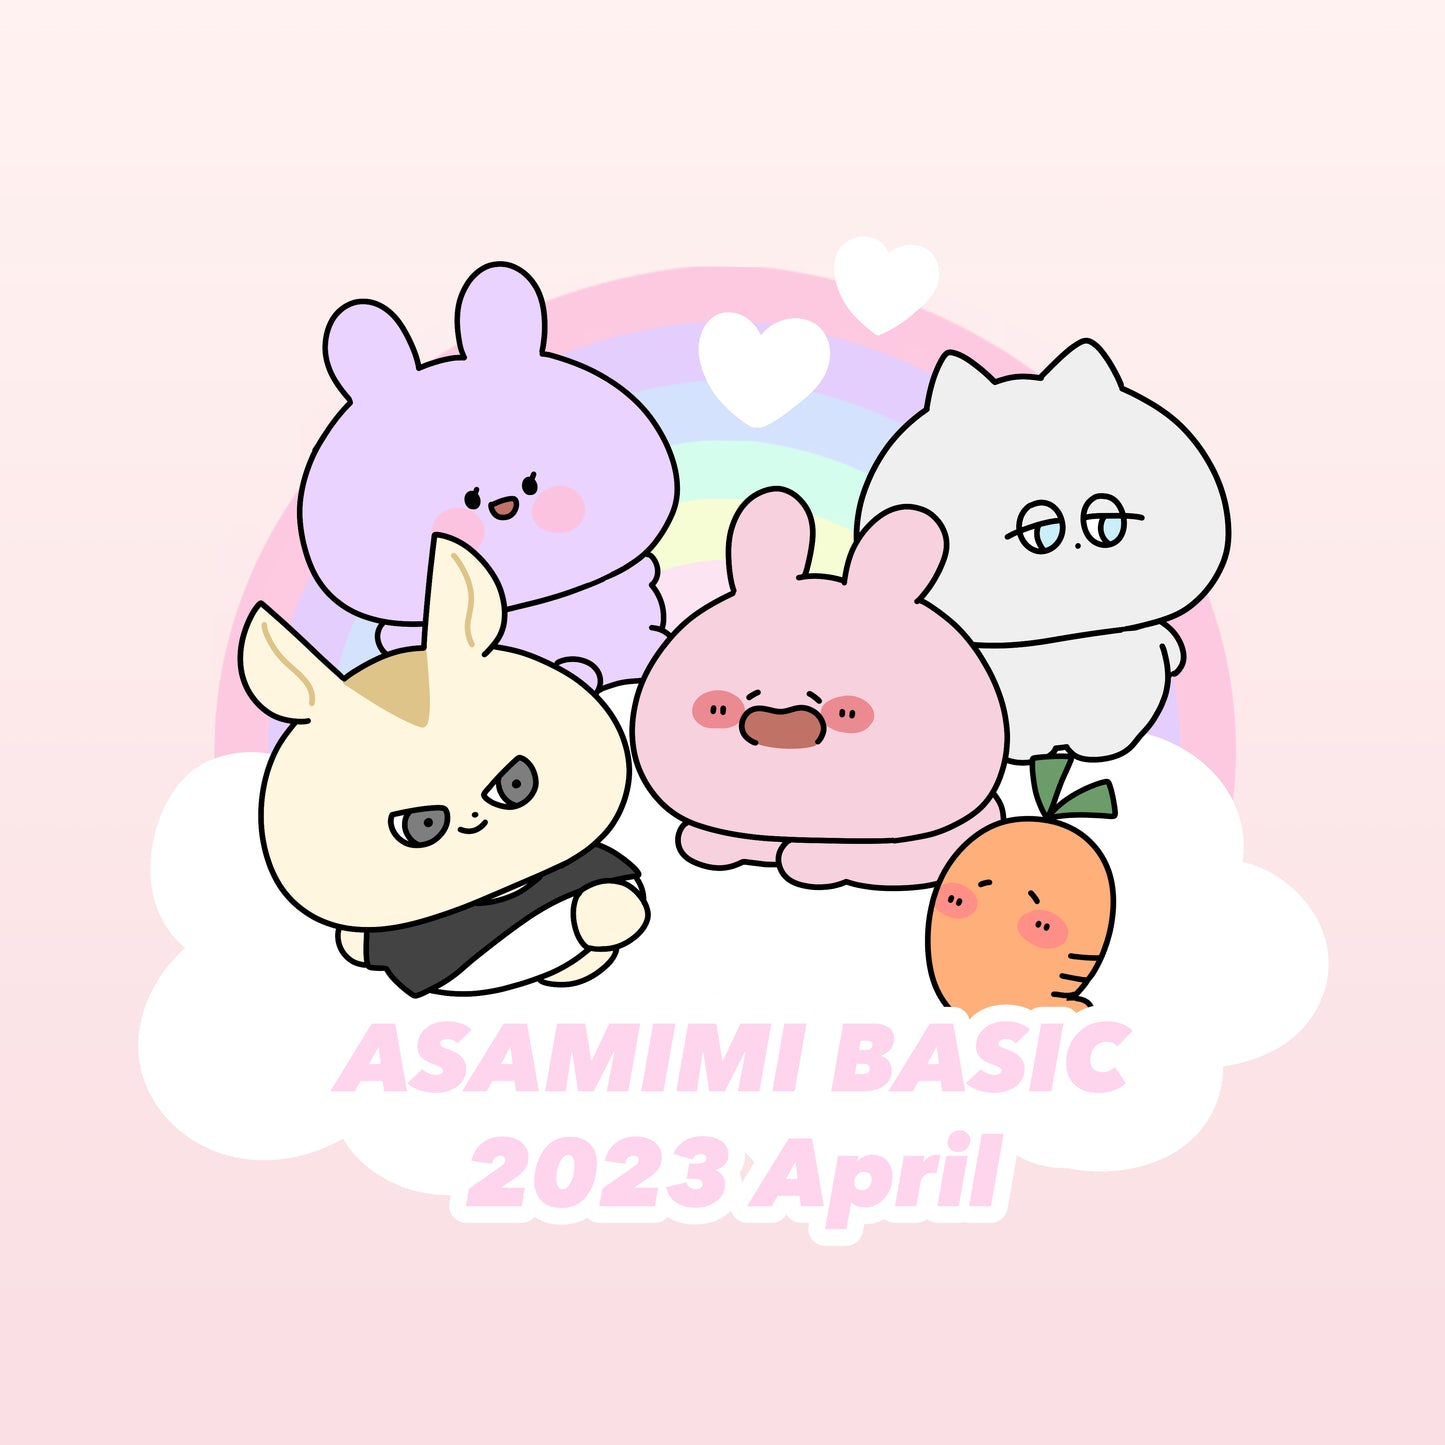 [Asamimi-chan] Drawstring bag (Asamimi BASIC 2023 April) [Shipped in early June]